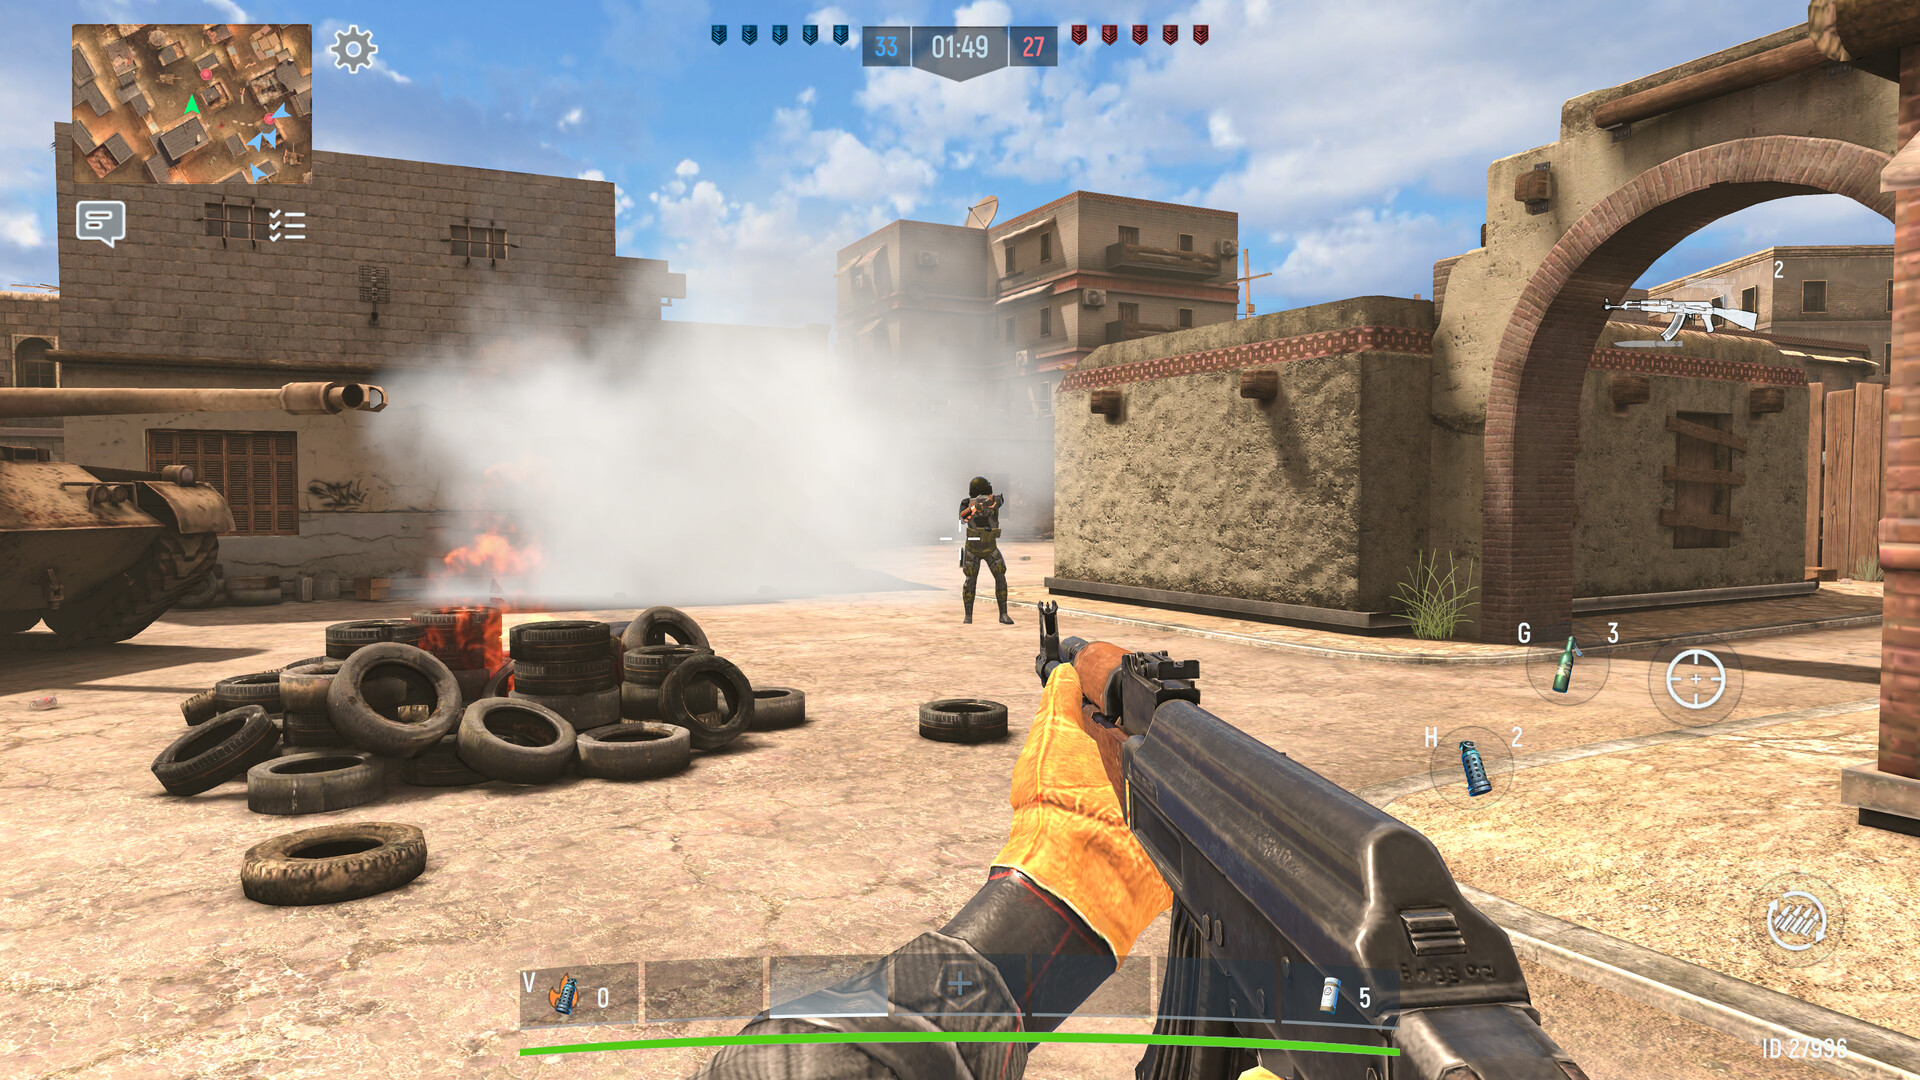 War Gun Shooting Games Online on Steam